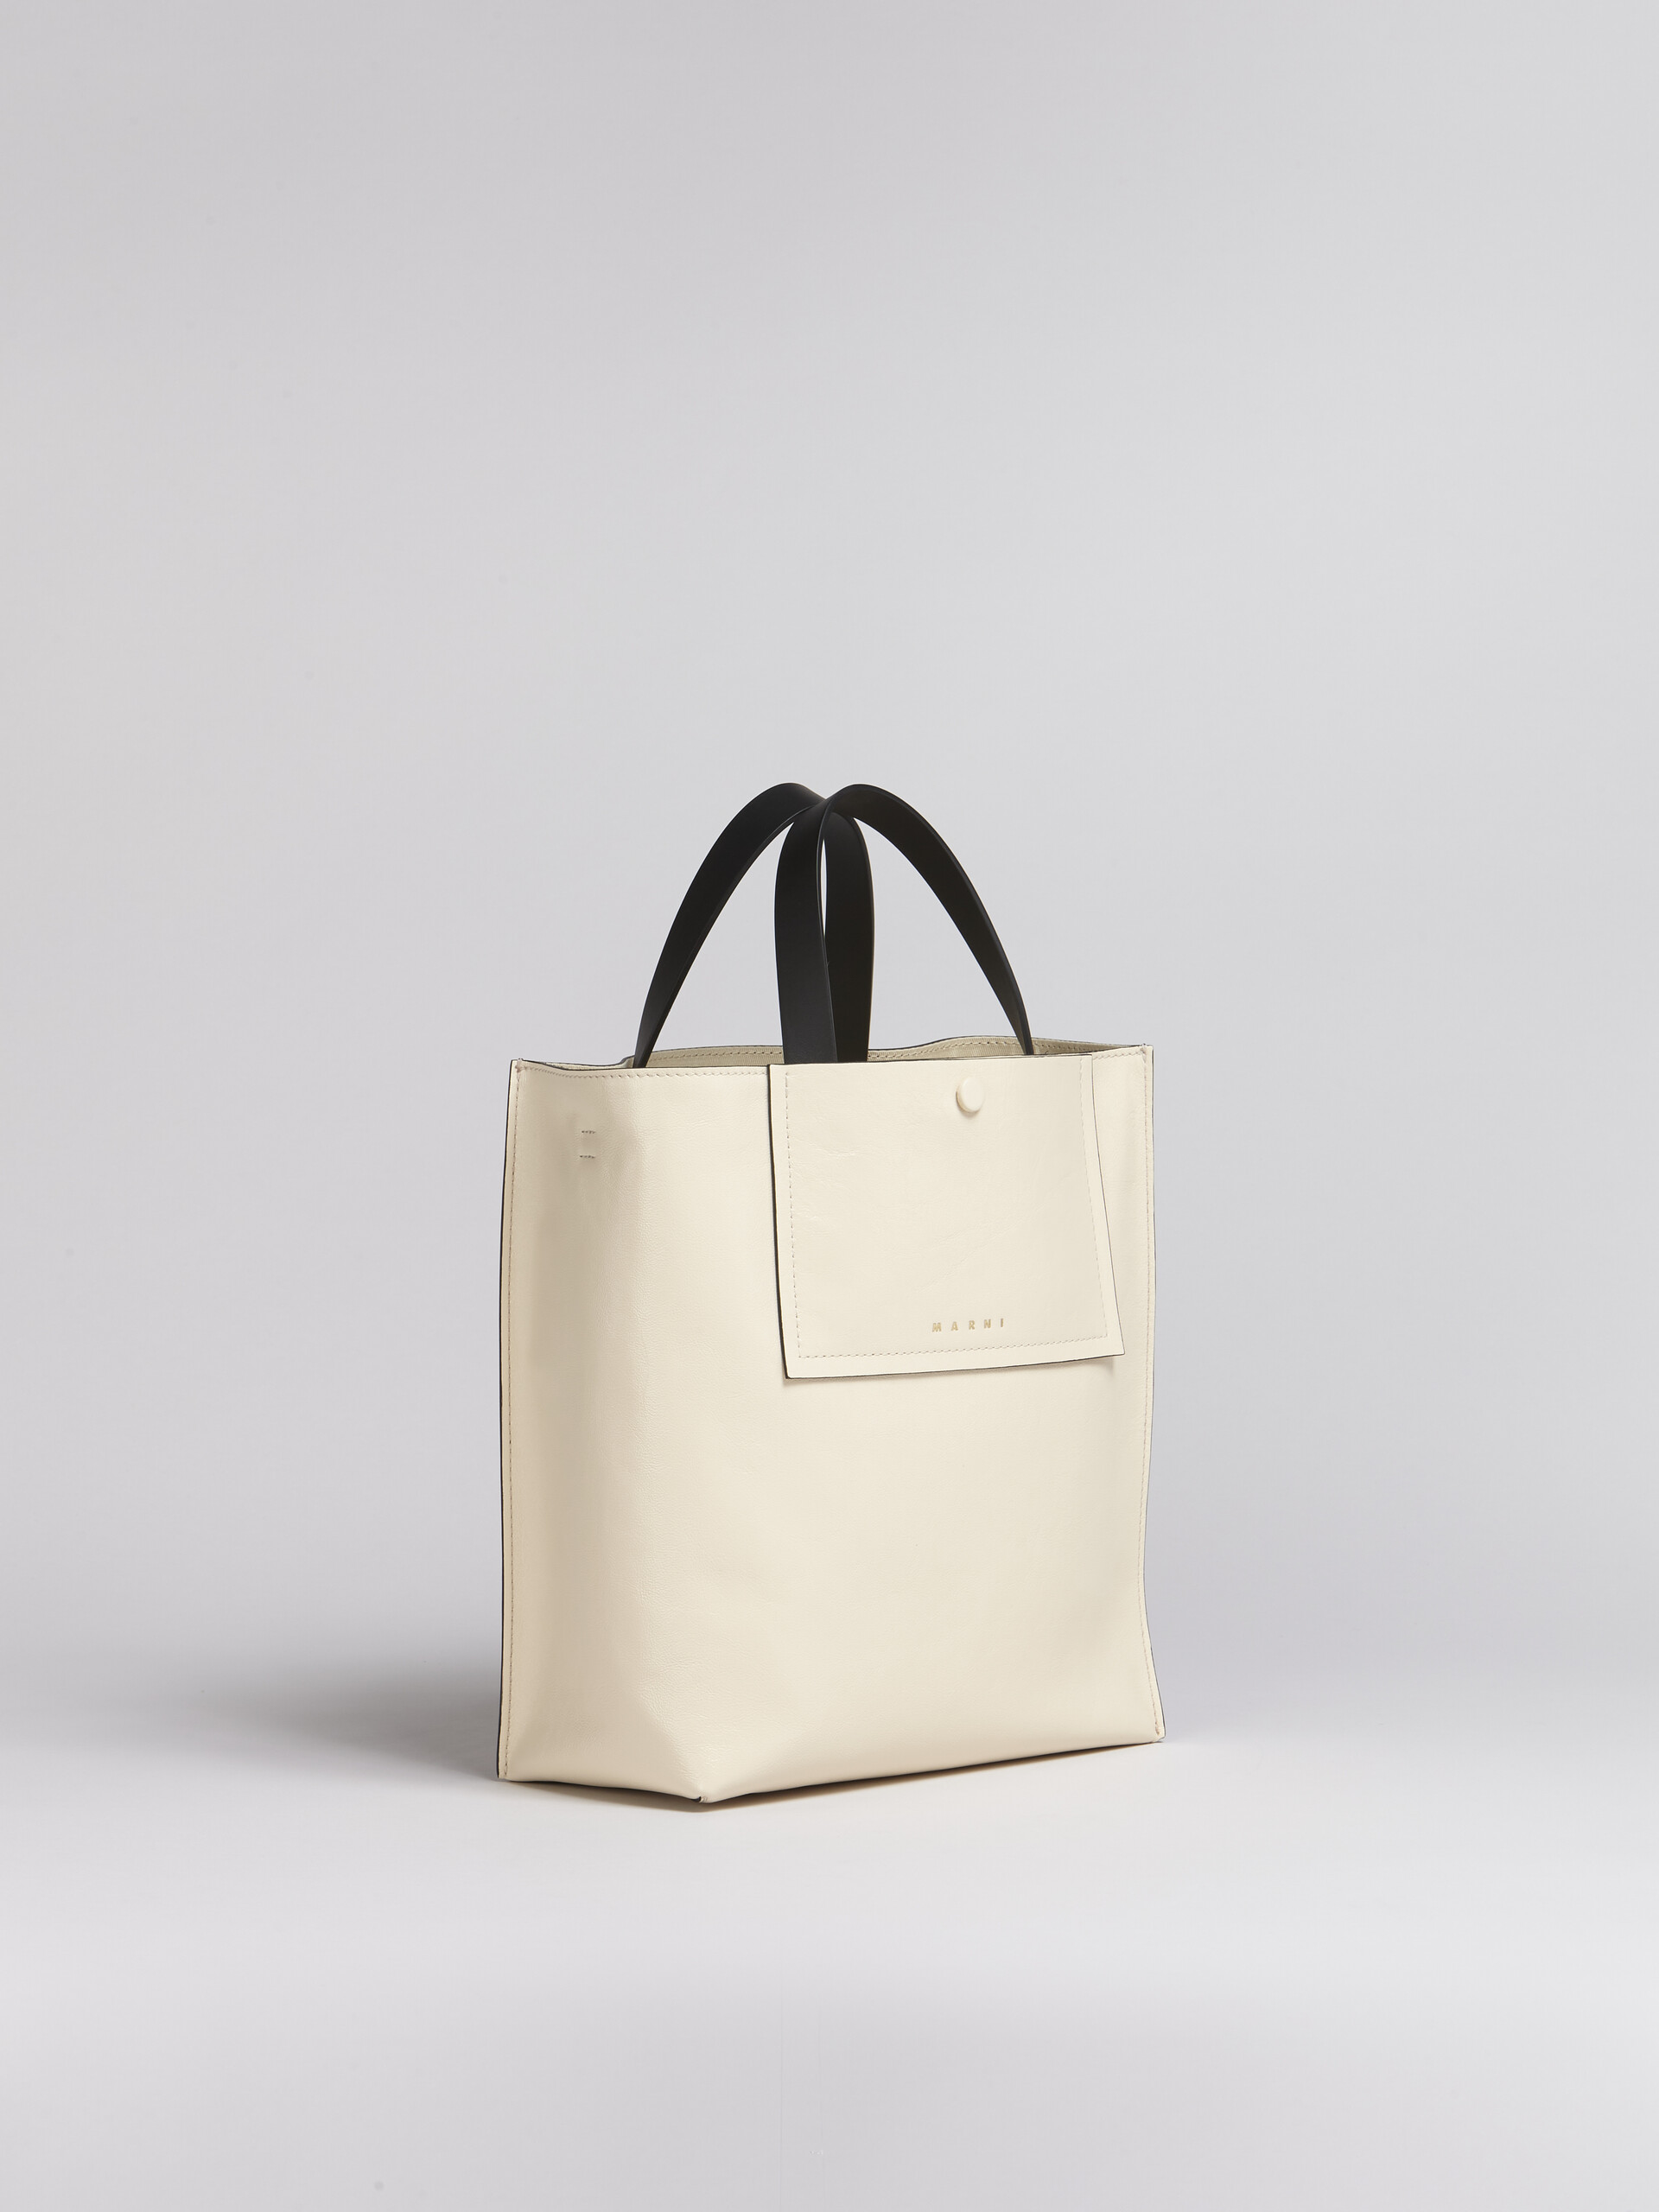 Vertikale MUSEO SOFT Tote Bag aus Leder im Colourblock-Design - Shopper - Image 5